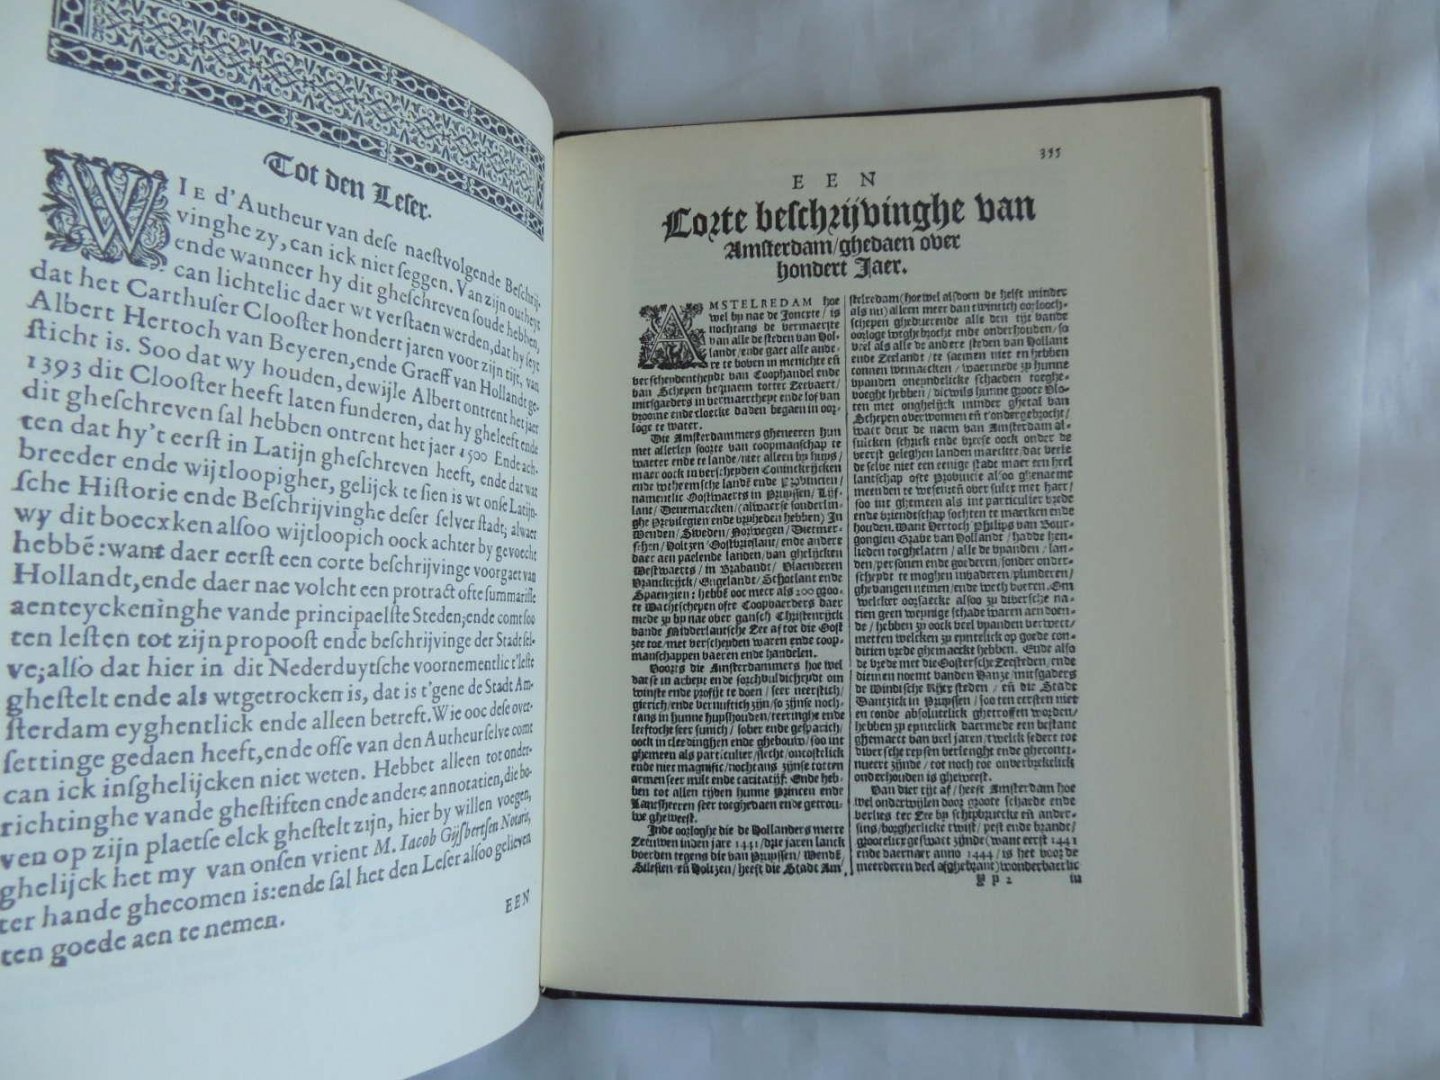 PONTANUS, Johannes Isacius - Historische Beschrijvinghe der seer wijt beroemde Coopstadt coop-stadt  Amsterdam... (met los bijgevoegde inleiding van 16pp.)  --- HERLEEFD VERLEDEN ---